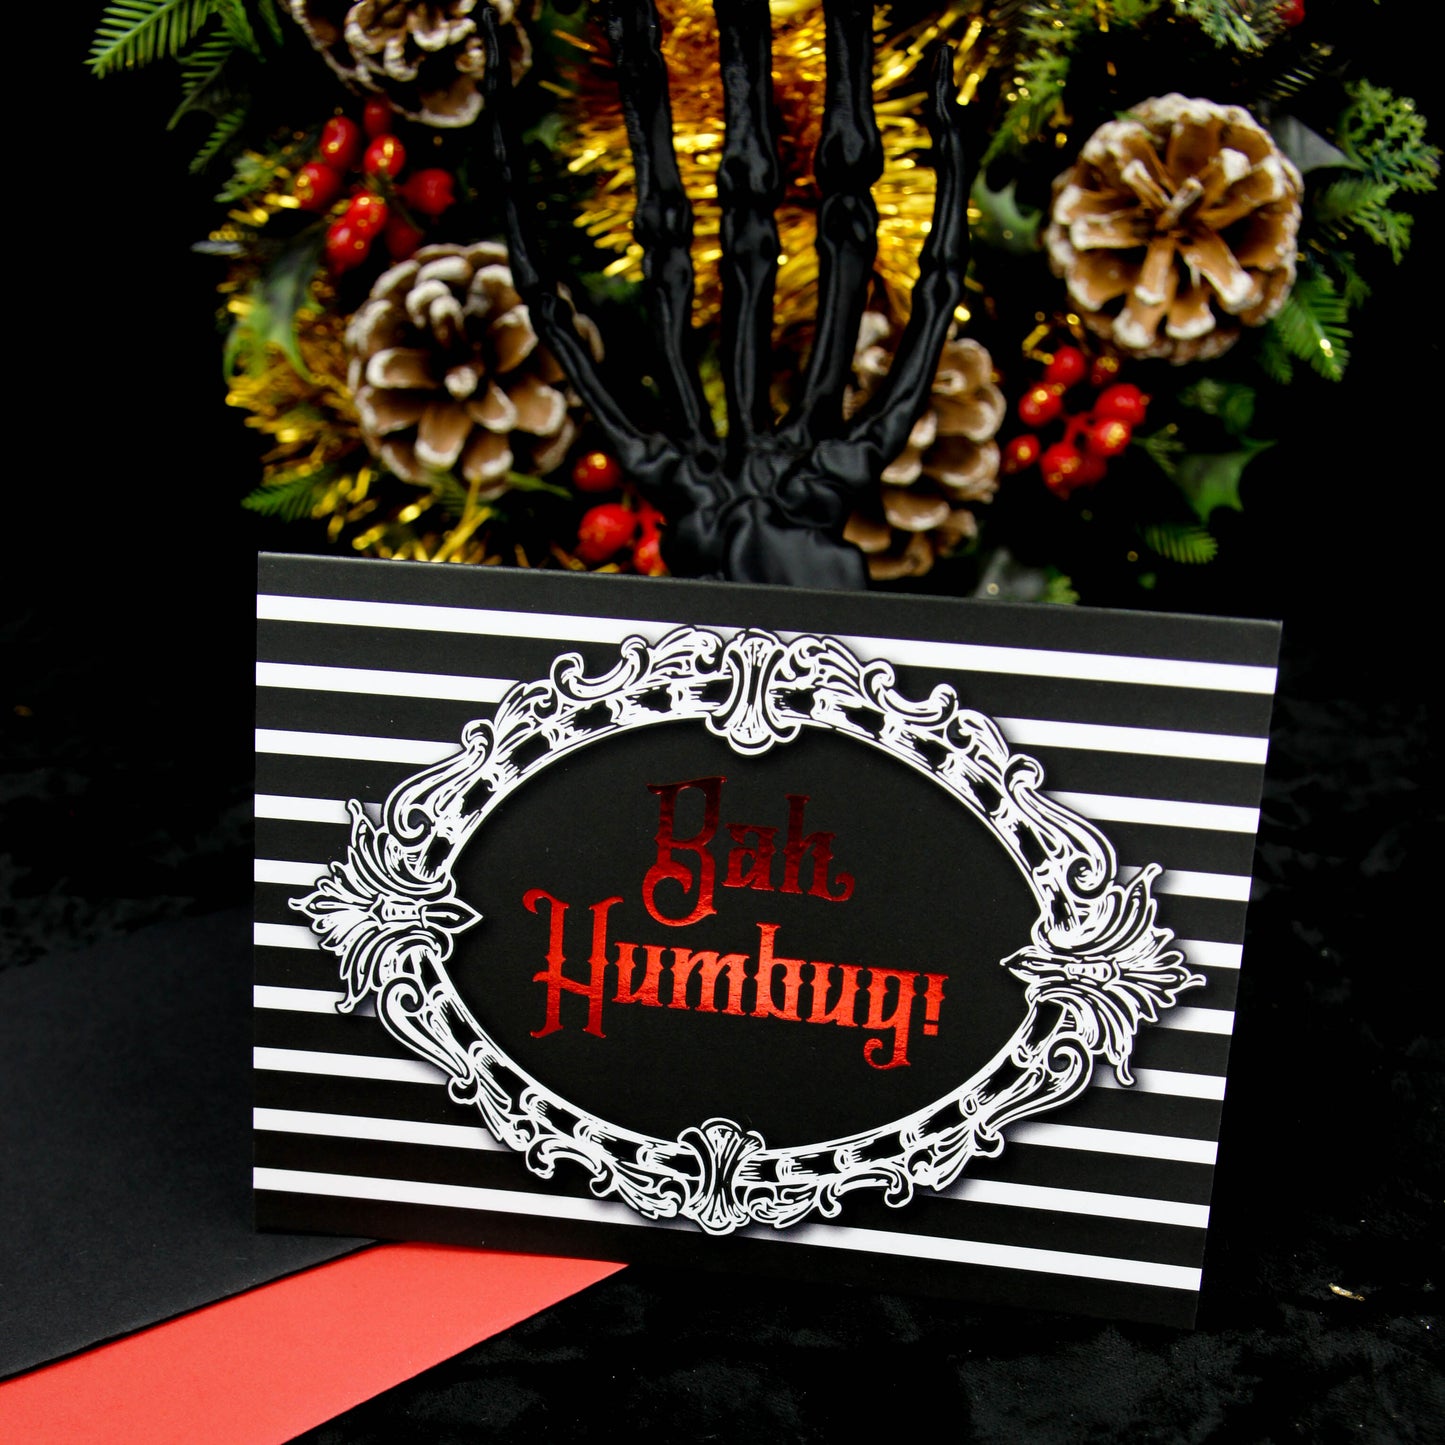 London Studio-Crafted 'Bah Humbug' Christmas Card